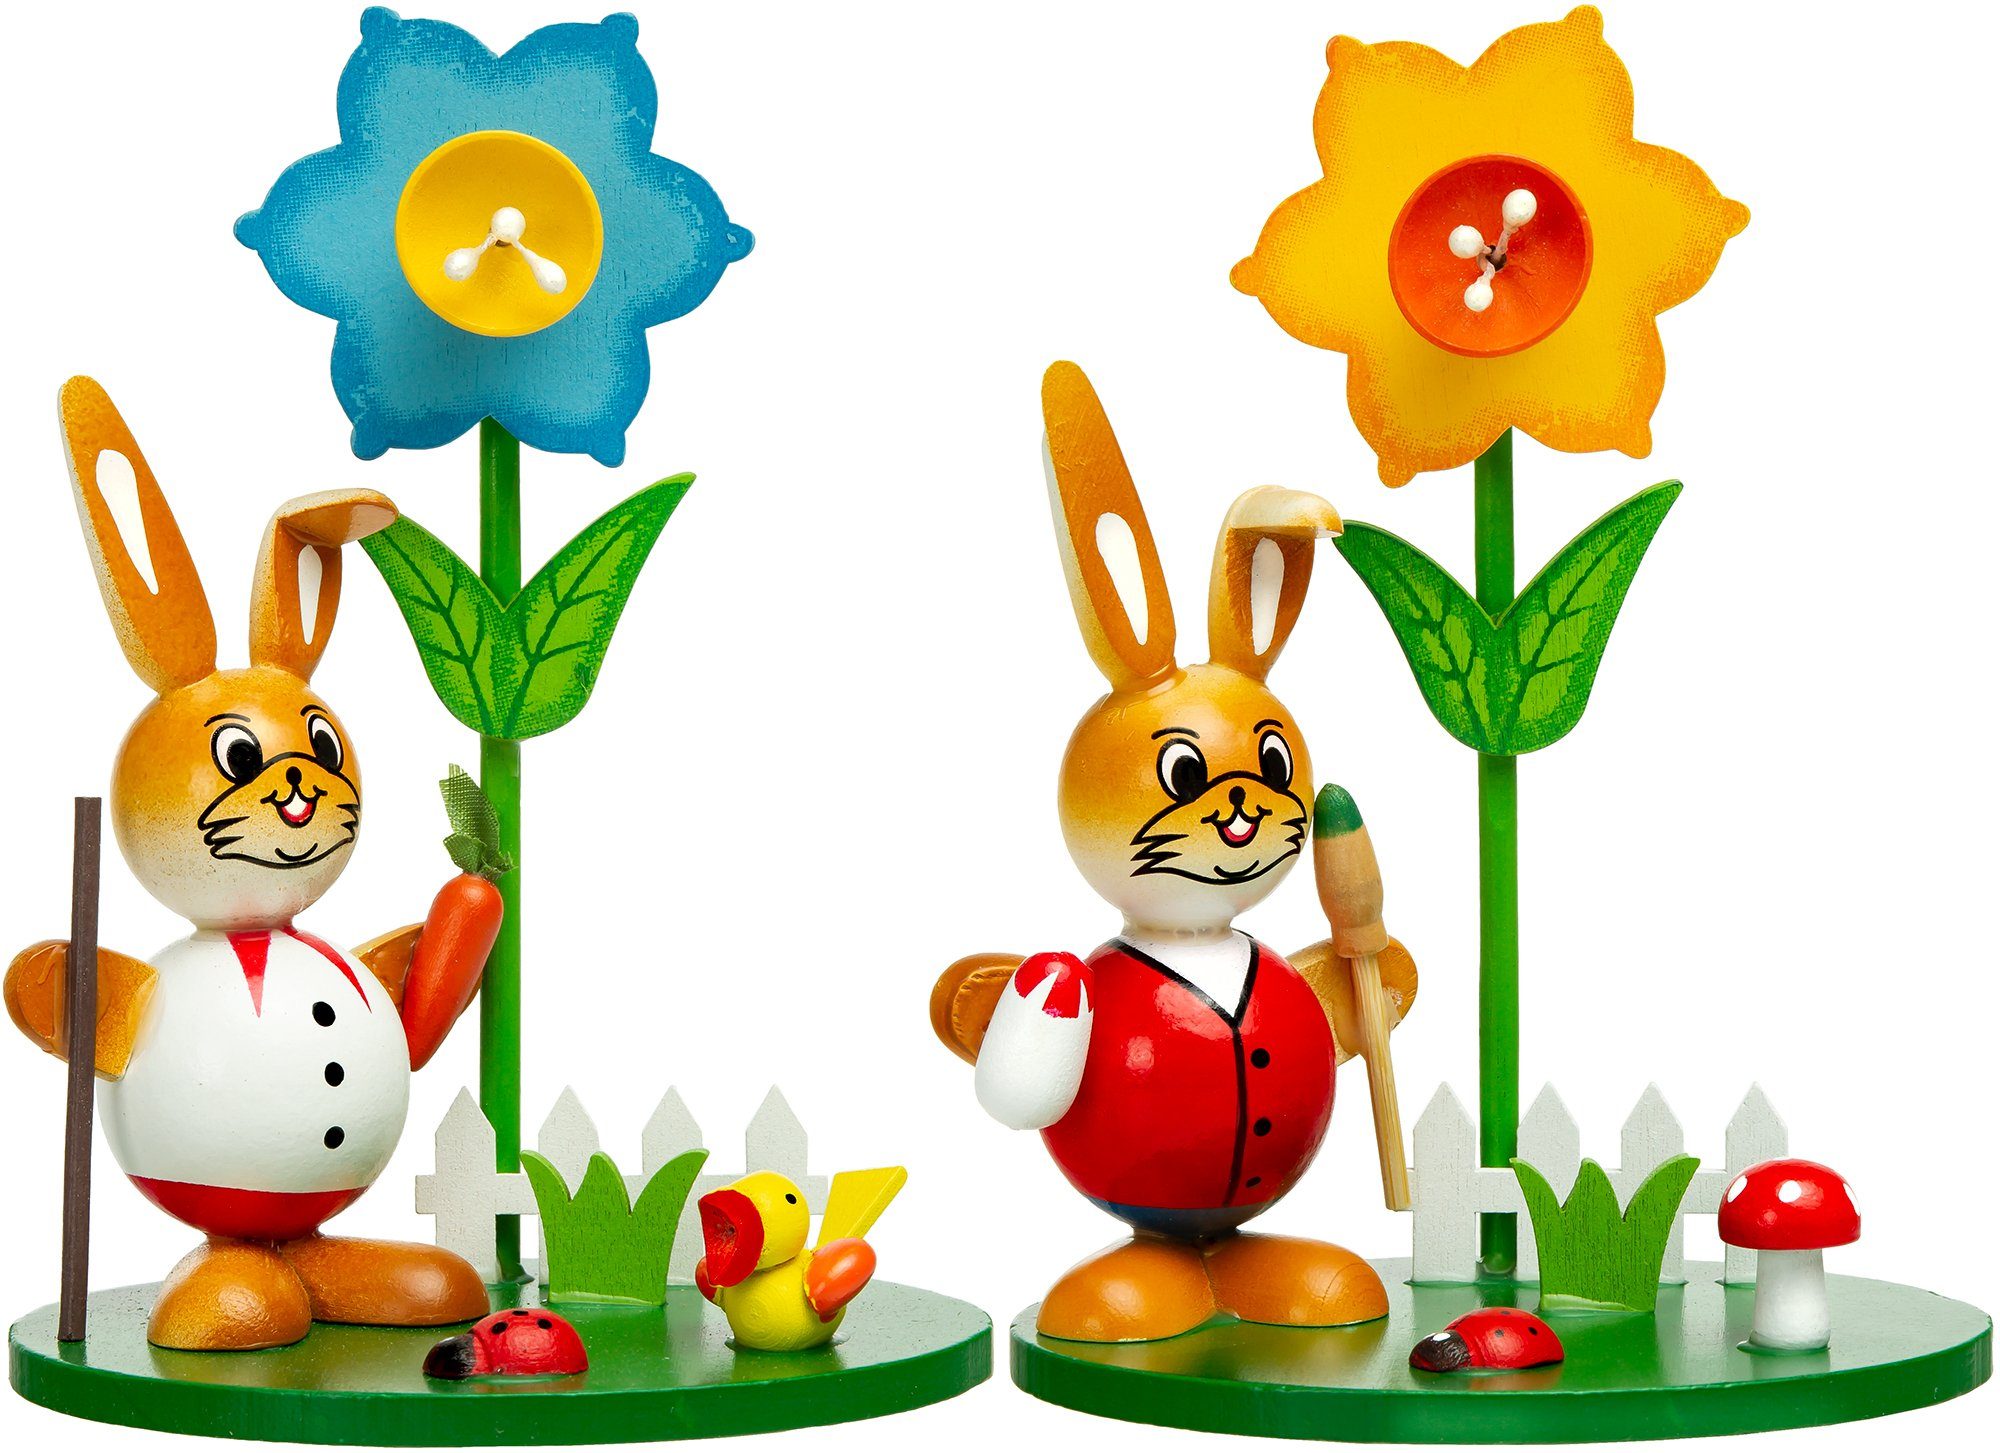 SIKORA Osterhase OD11 Holz Osterhasen Figuren im Ostergarten mit farbenfrohen Frühlings Blumen H: 13 cm Osterhasen 2er Set mit Osterglocken